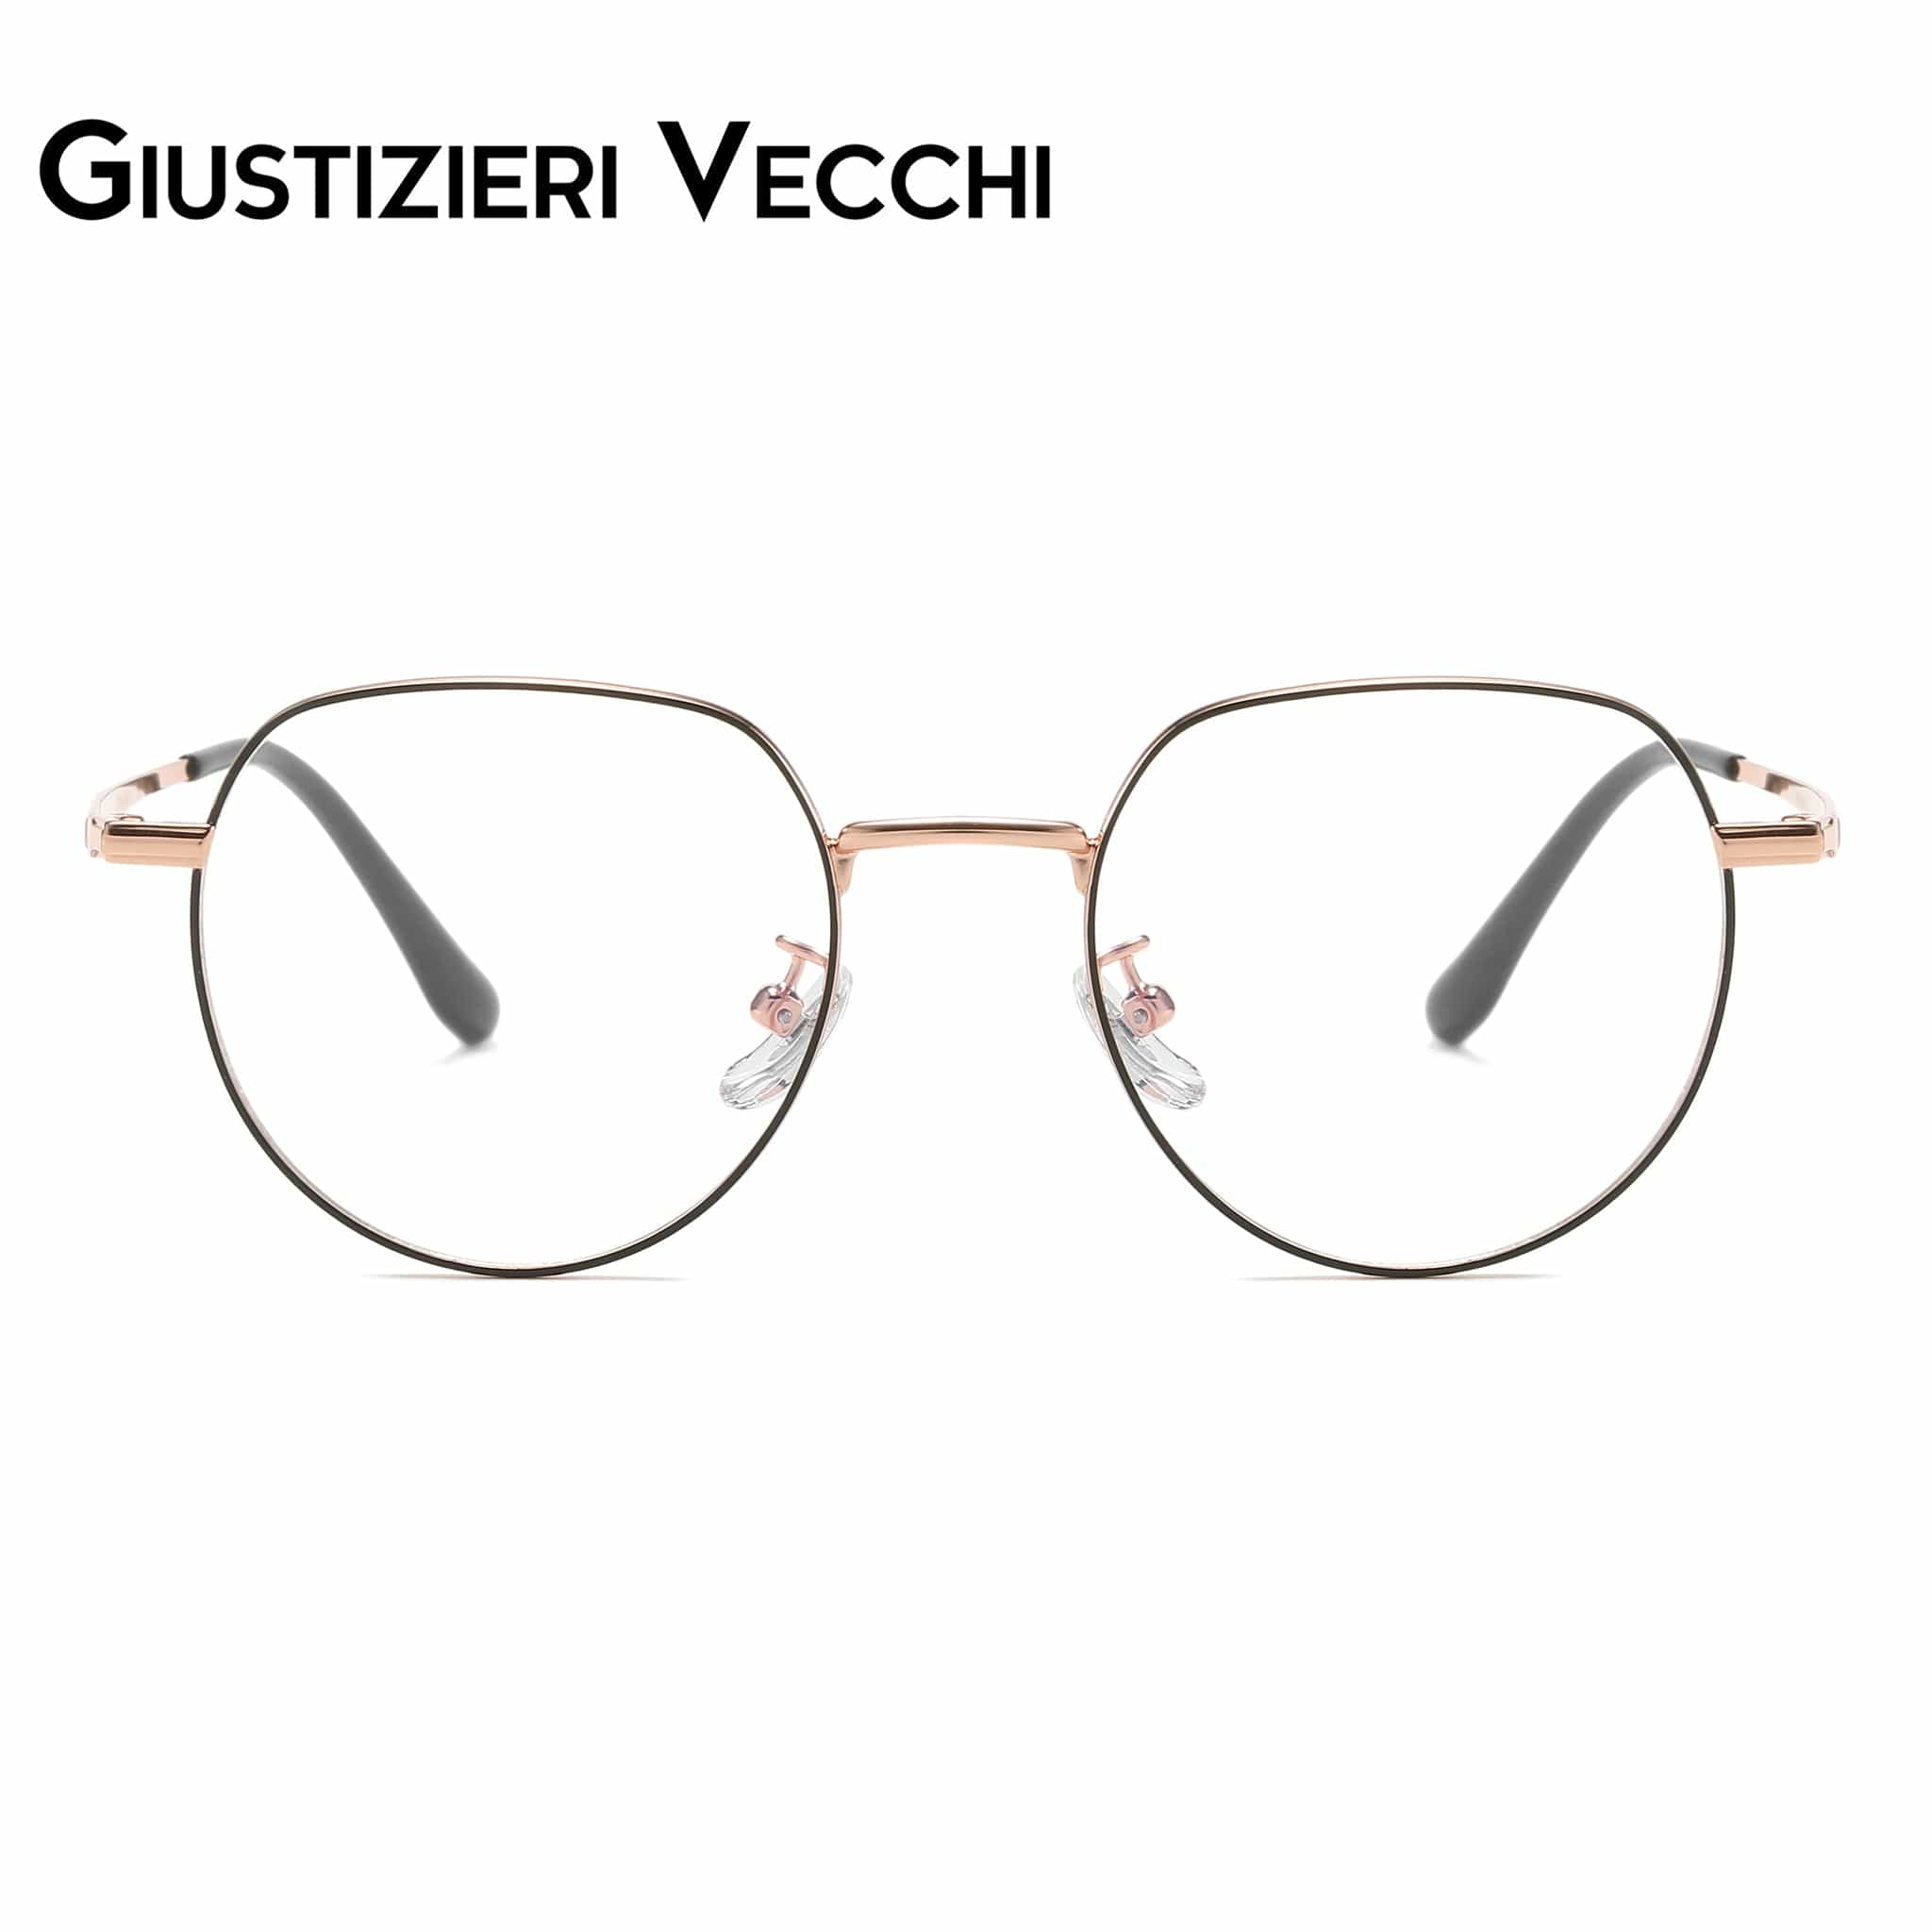 GIUSTIZIERI VECCHI Eyeglasses Black with Rose Gold / Small LunarTide Uno